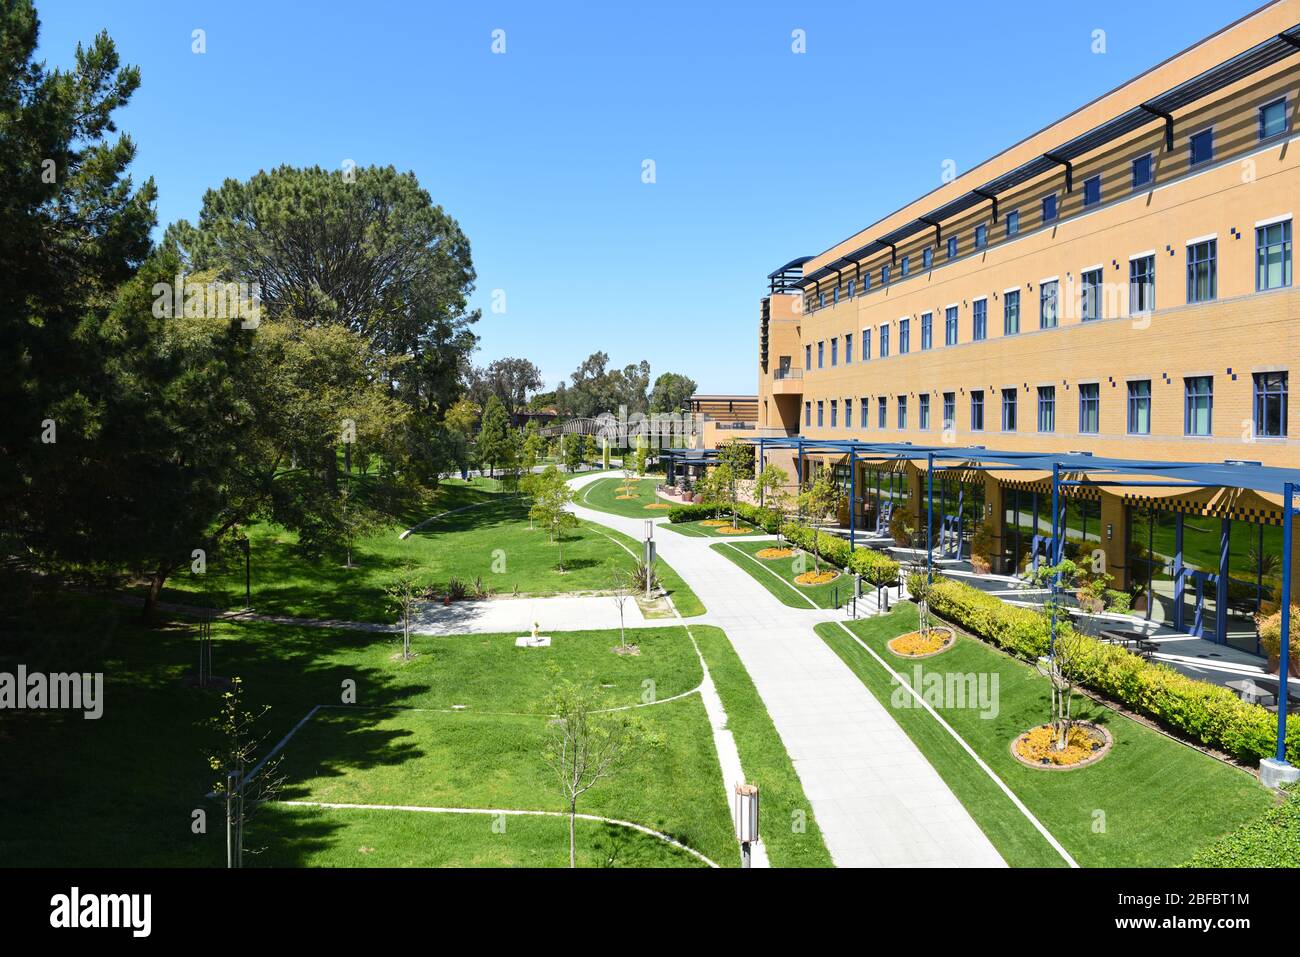 IRVINE, CALIFORNIE - 16 AVRIL 2020: Le Centre international sur le campus de l'Université de Californie Irvine, UCI. Banque D'Images